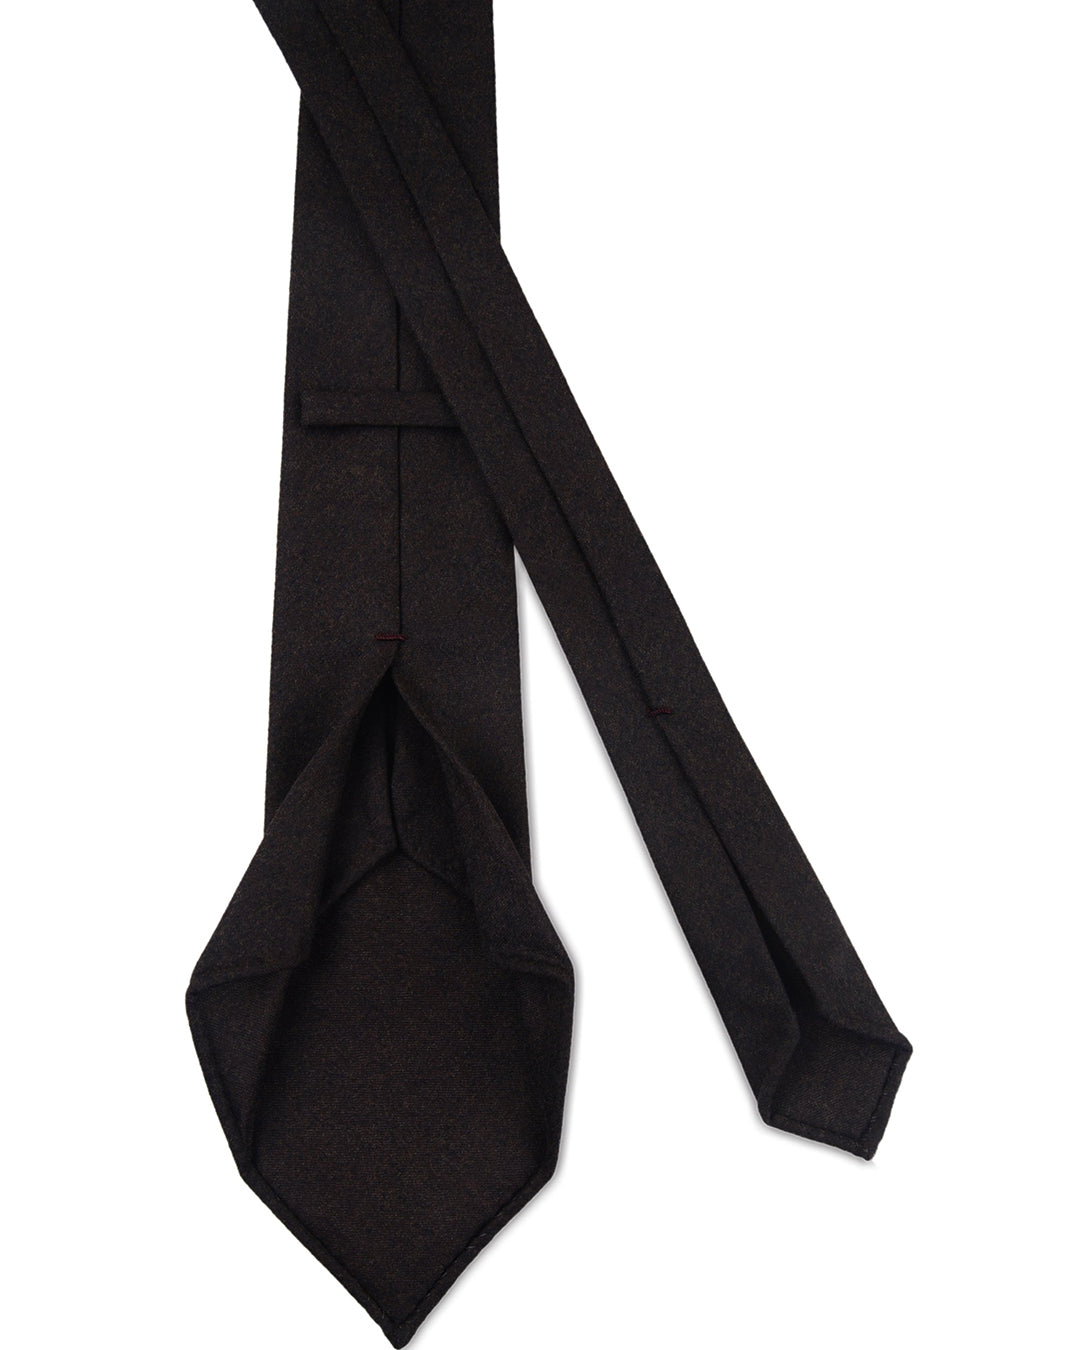 Dark Chocolate Brown Flannel Tie